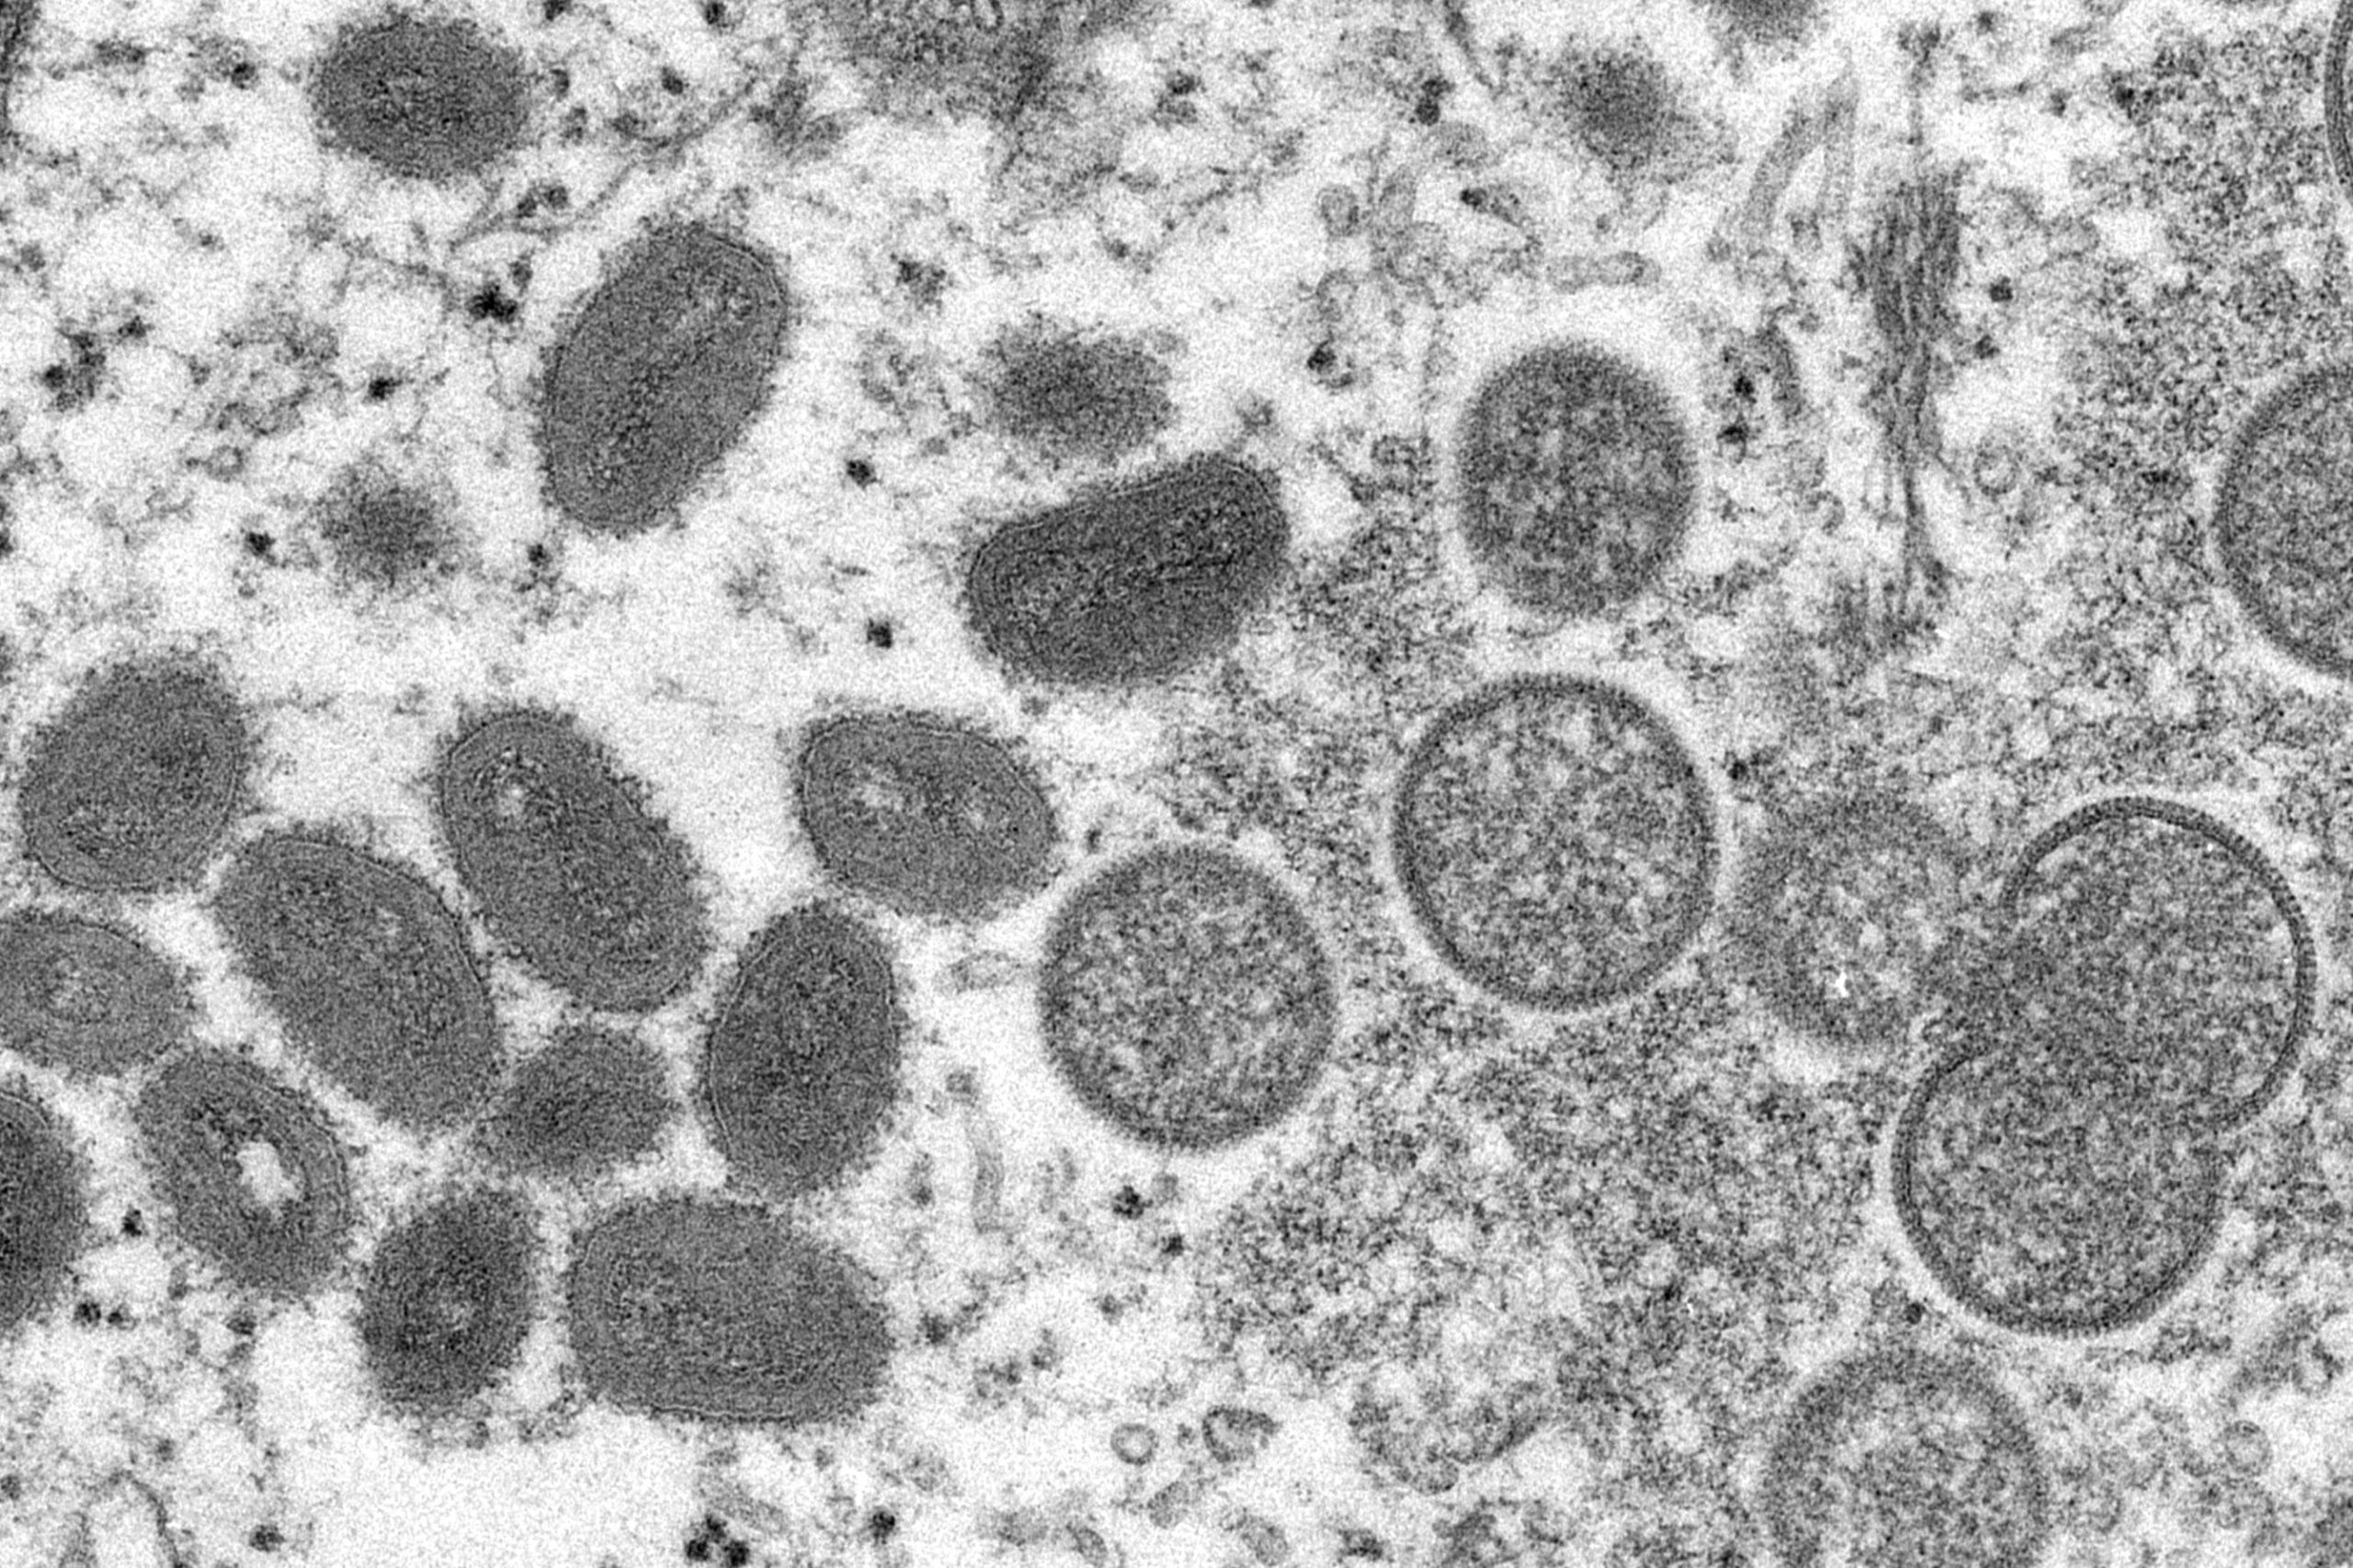 New York City resident tests positive for monkeypox virus